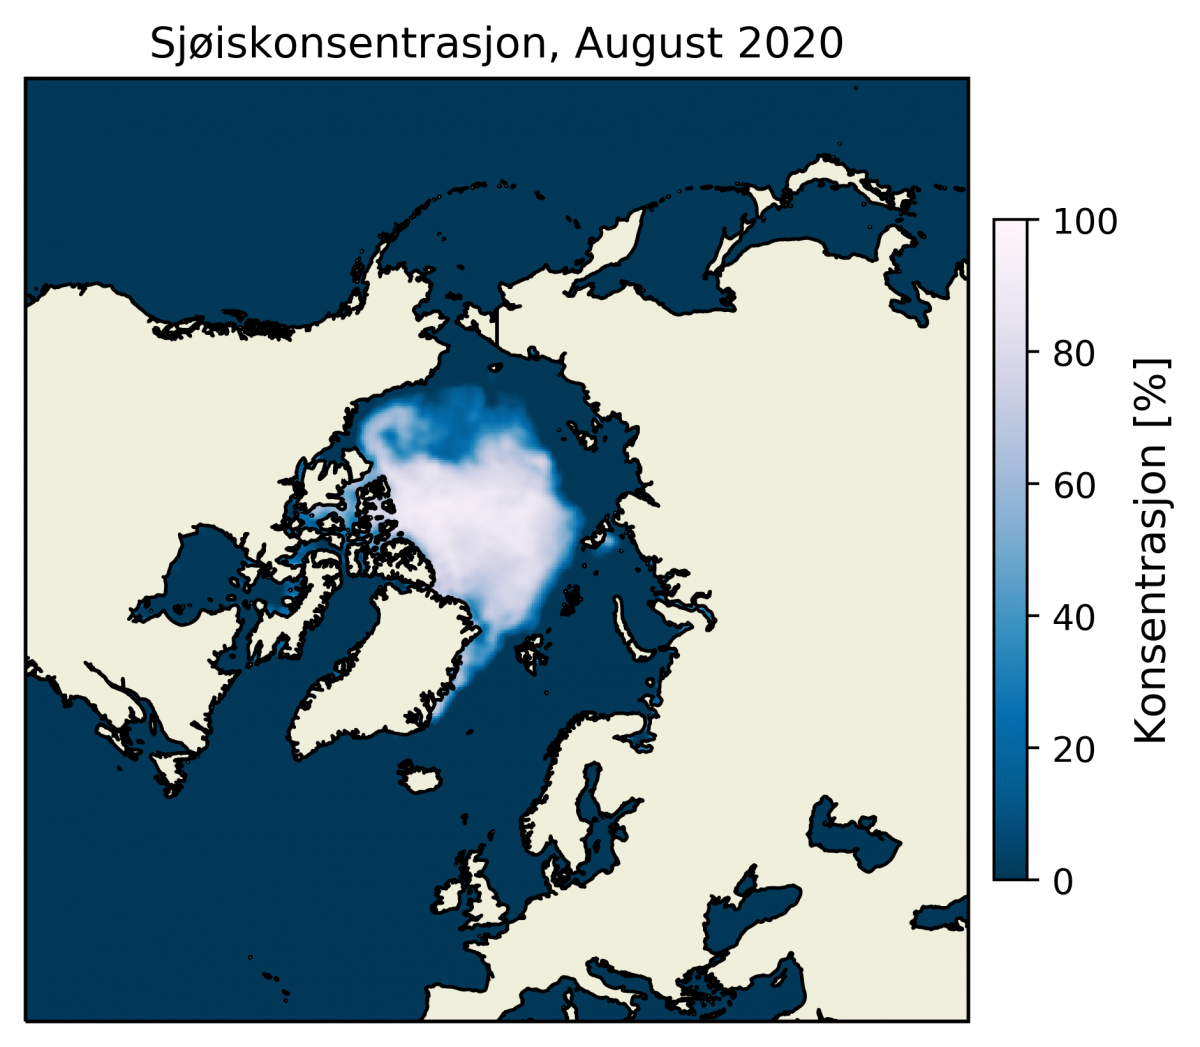 Sjøiskonsentrasjon i Arktis August 2020